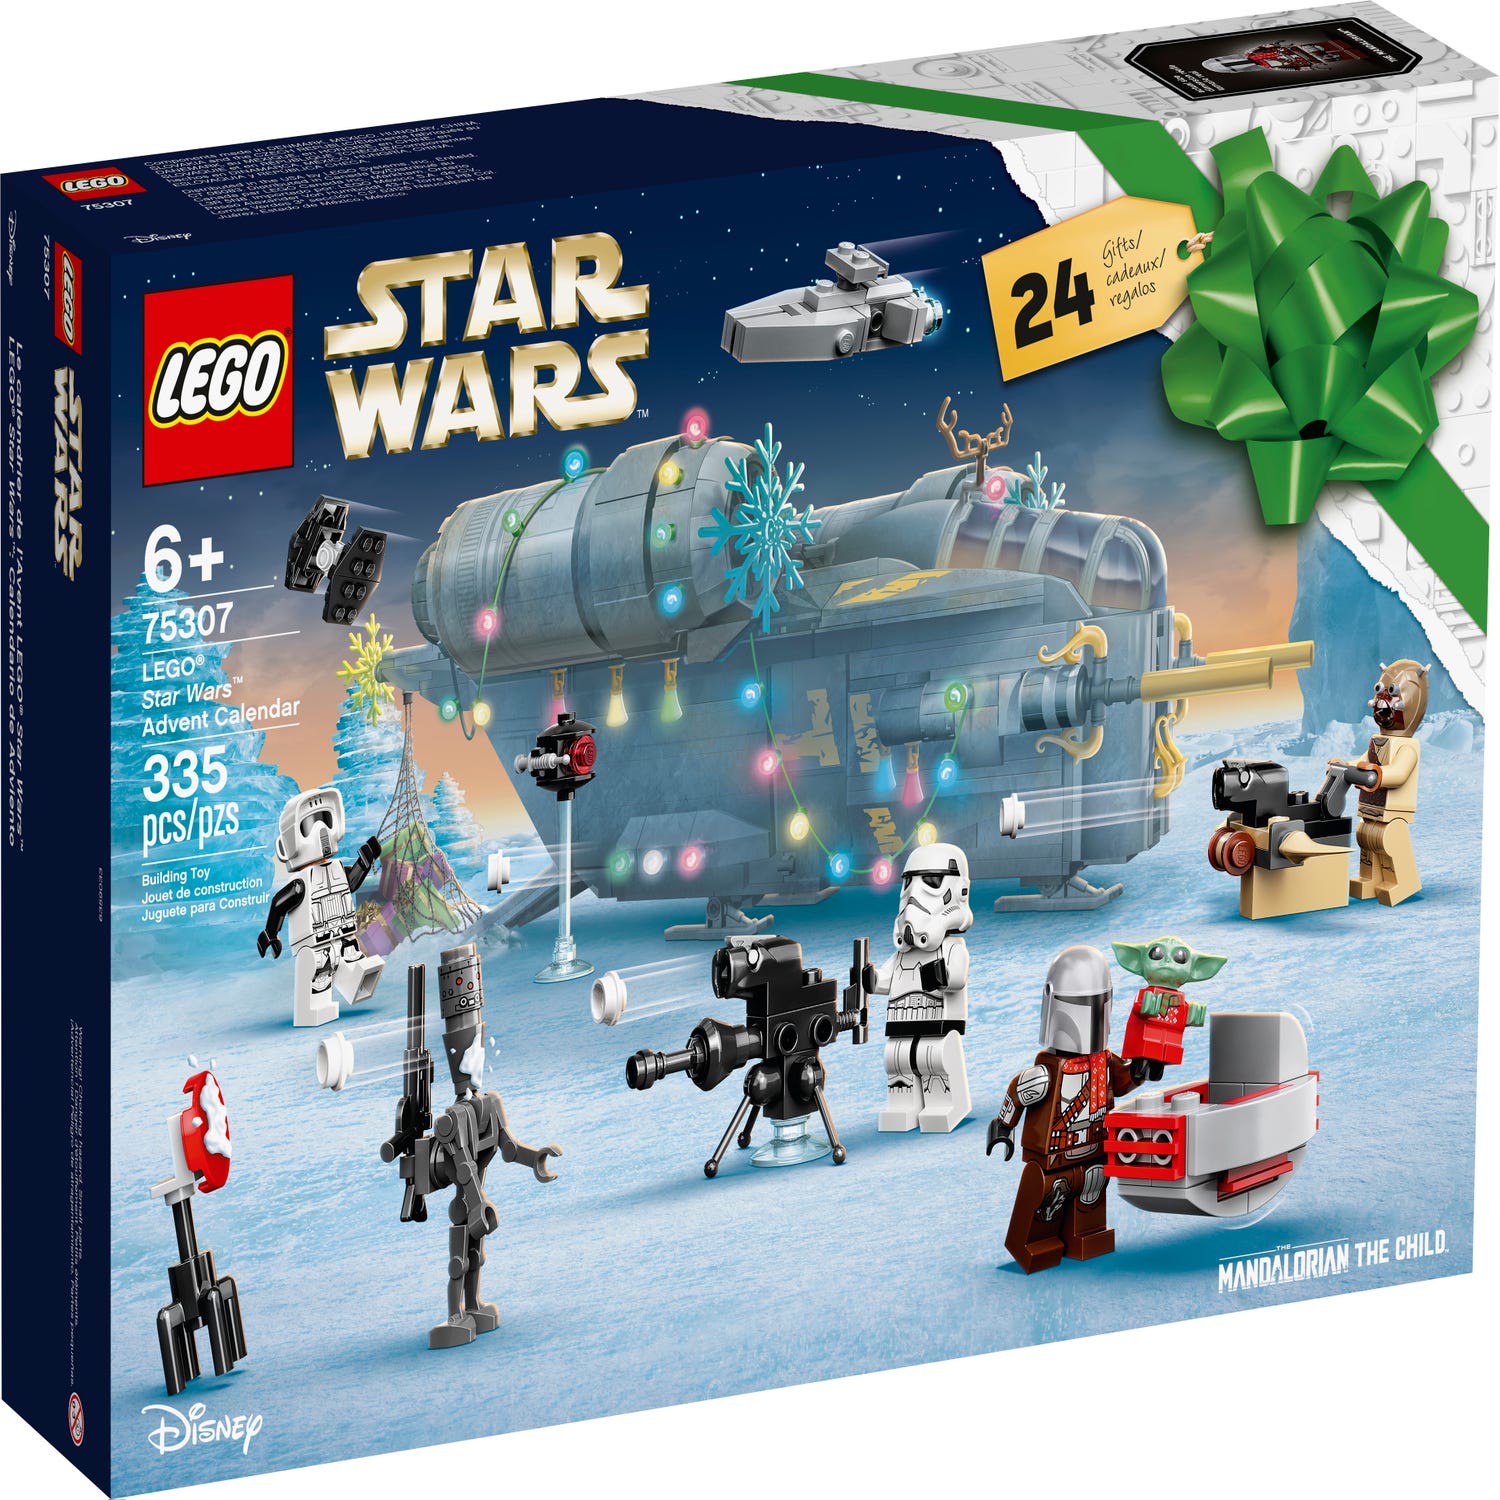 LEGO Star Wars Advent Calendar 2021 75307 | Star Warsâ¢ | Buy online at the Official LEGOÂ® Shop SG